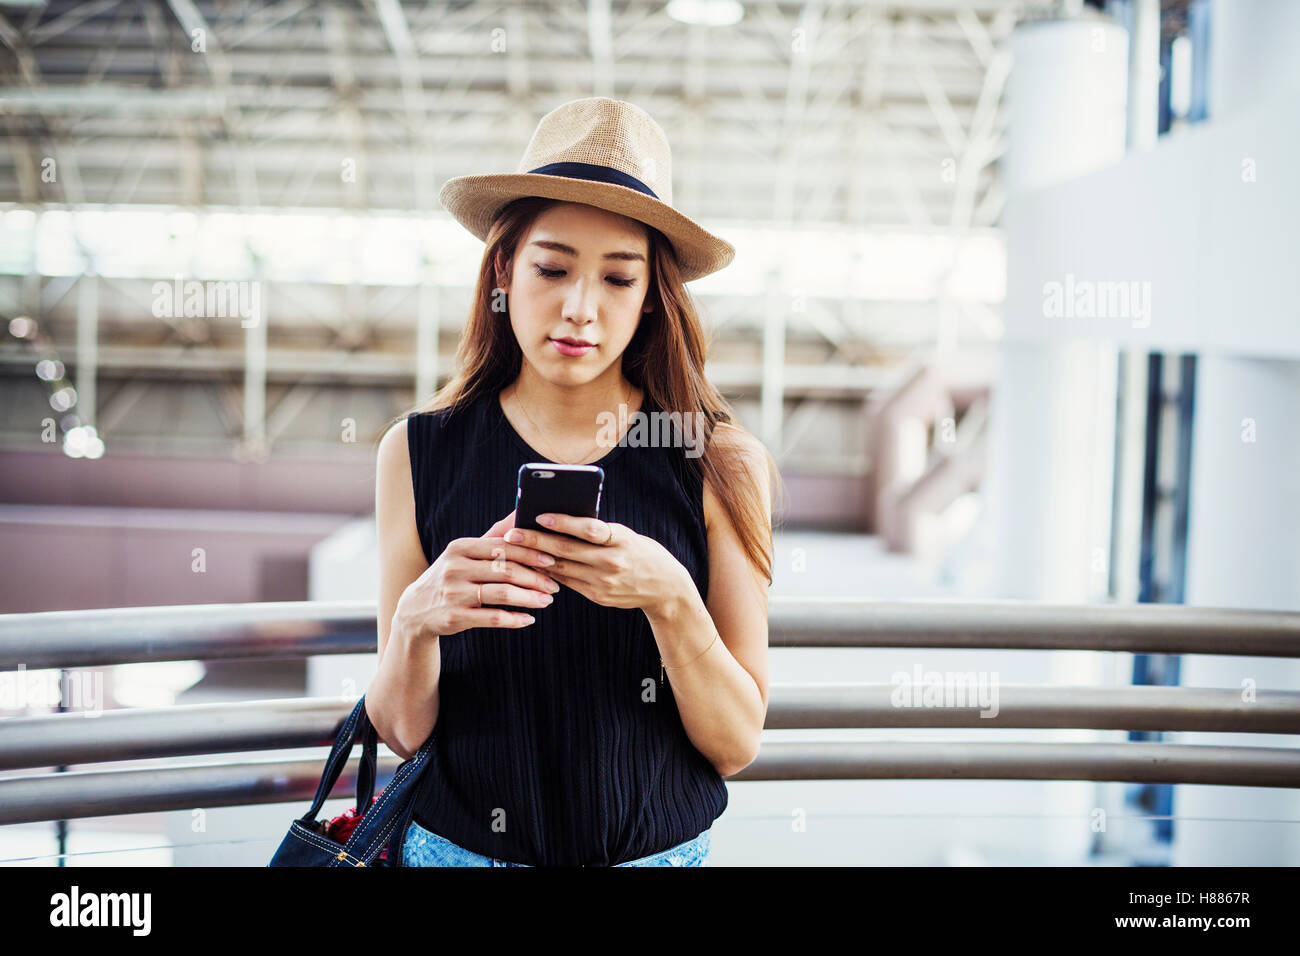 Giovane donna con capelli lunghi marrone, indossando un cappello di Panama, in un centro commerciale, utilizzando un telefono cellulare. Foto Stock